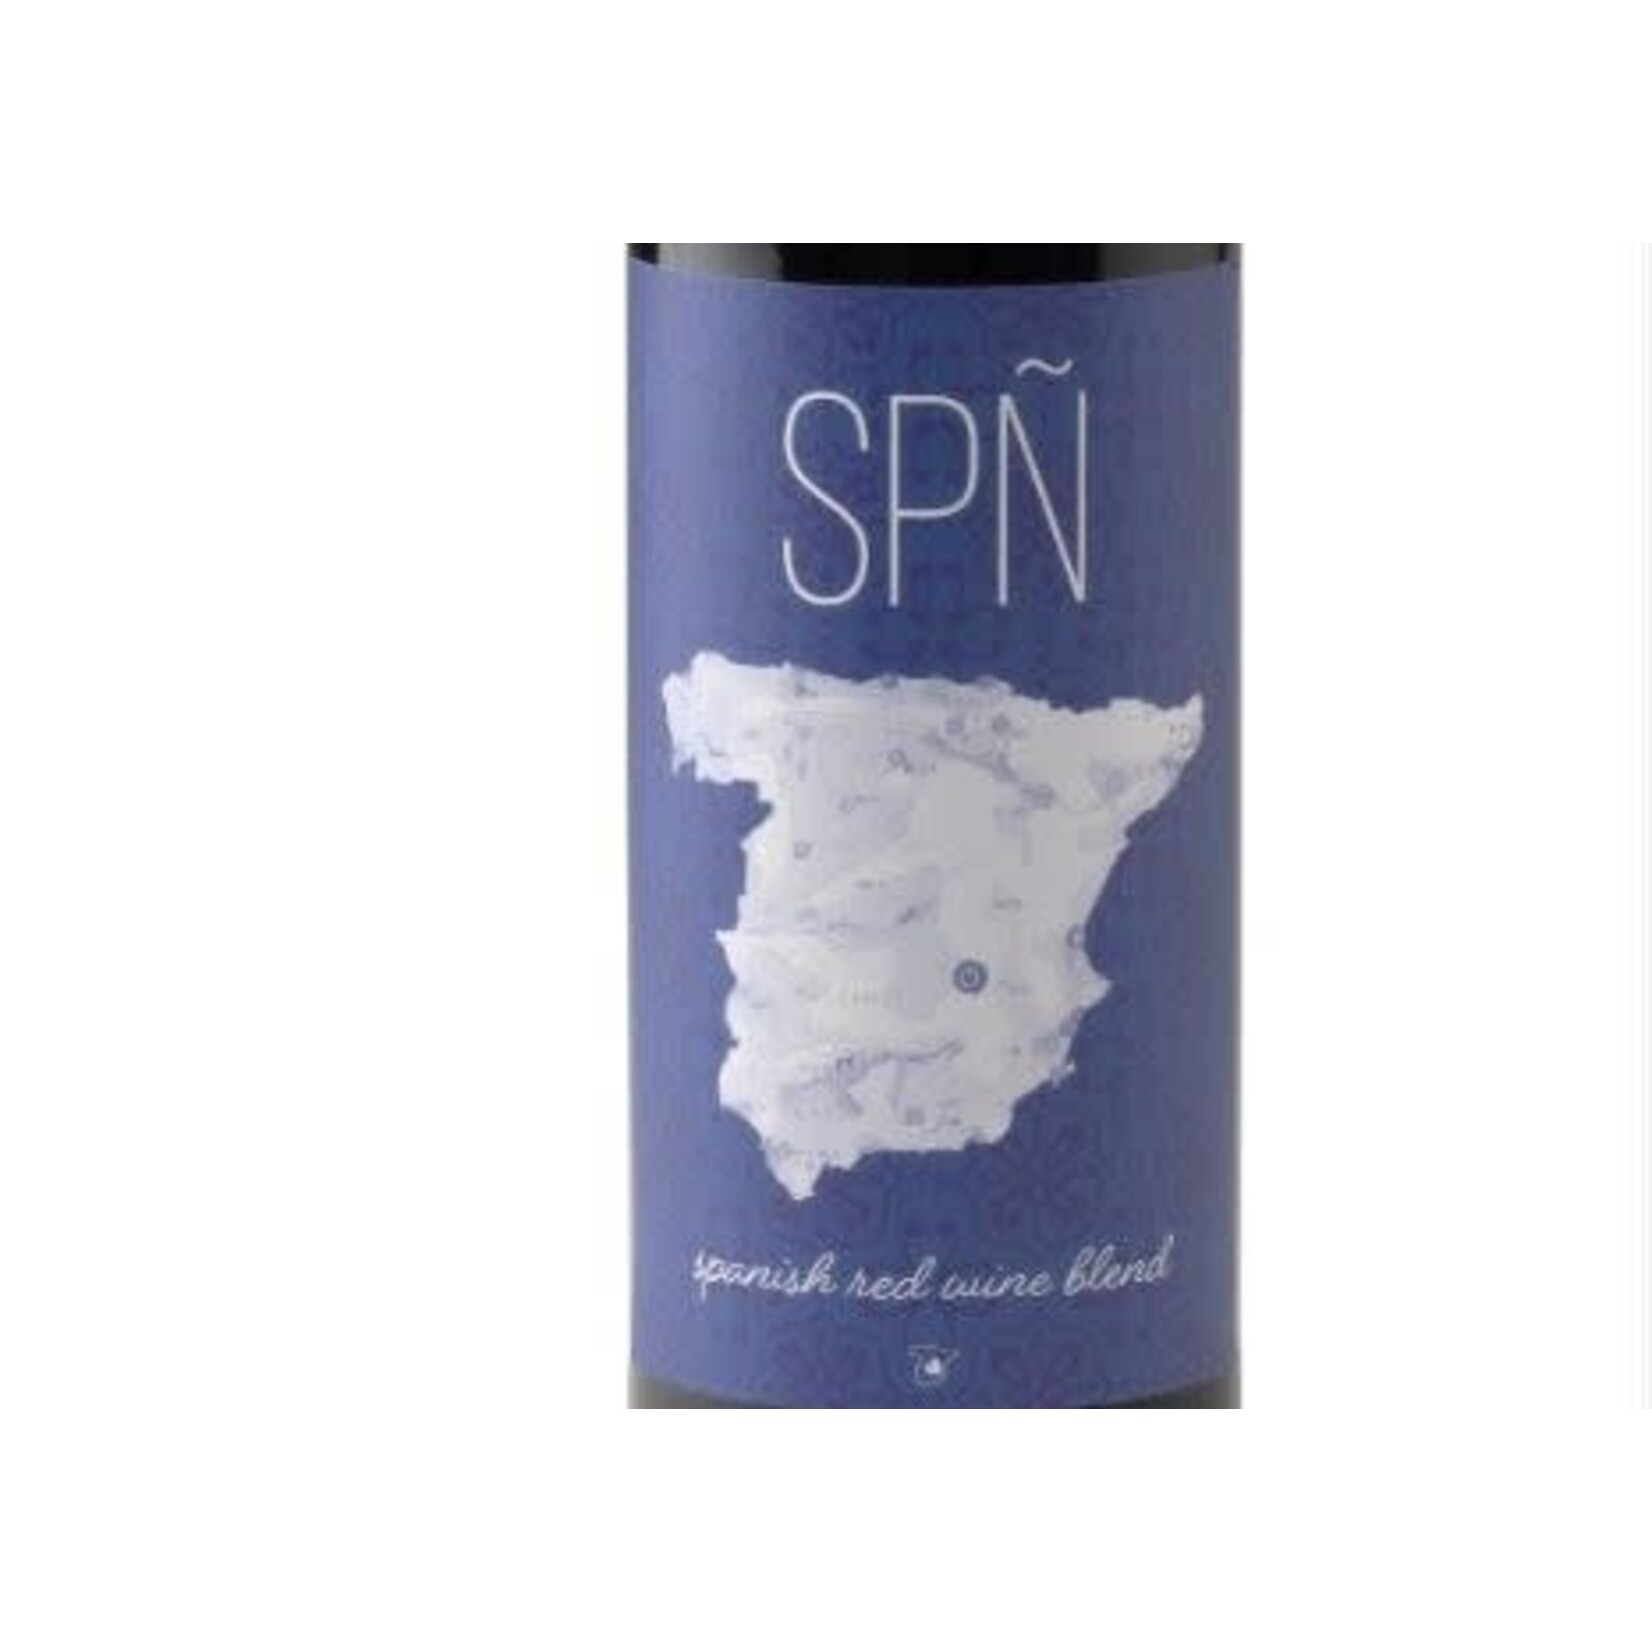 SPN SPN  Spanish Red Wine Blend 2020 Castilla VT,  Spain